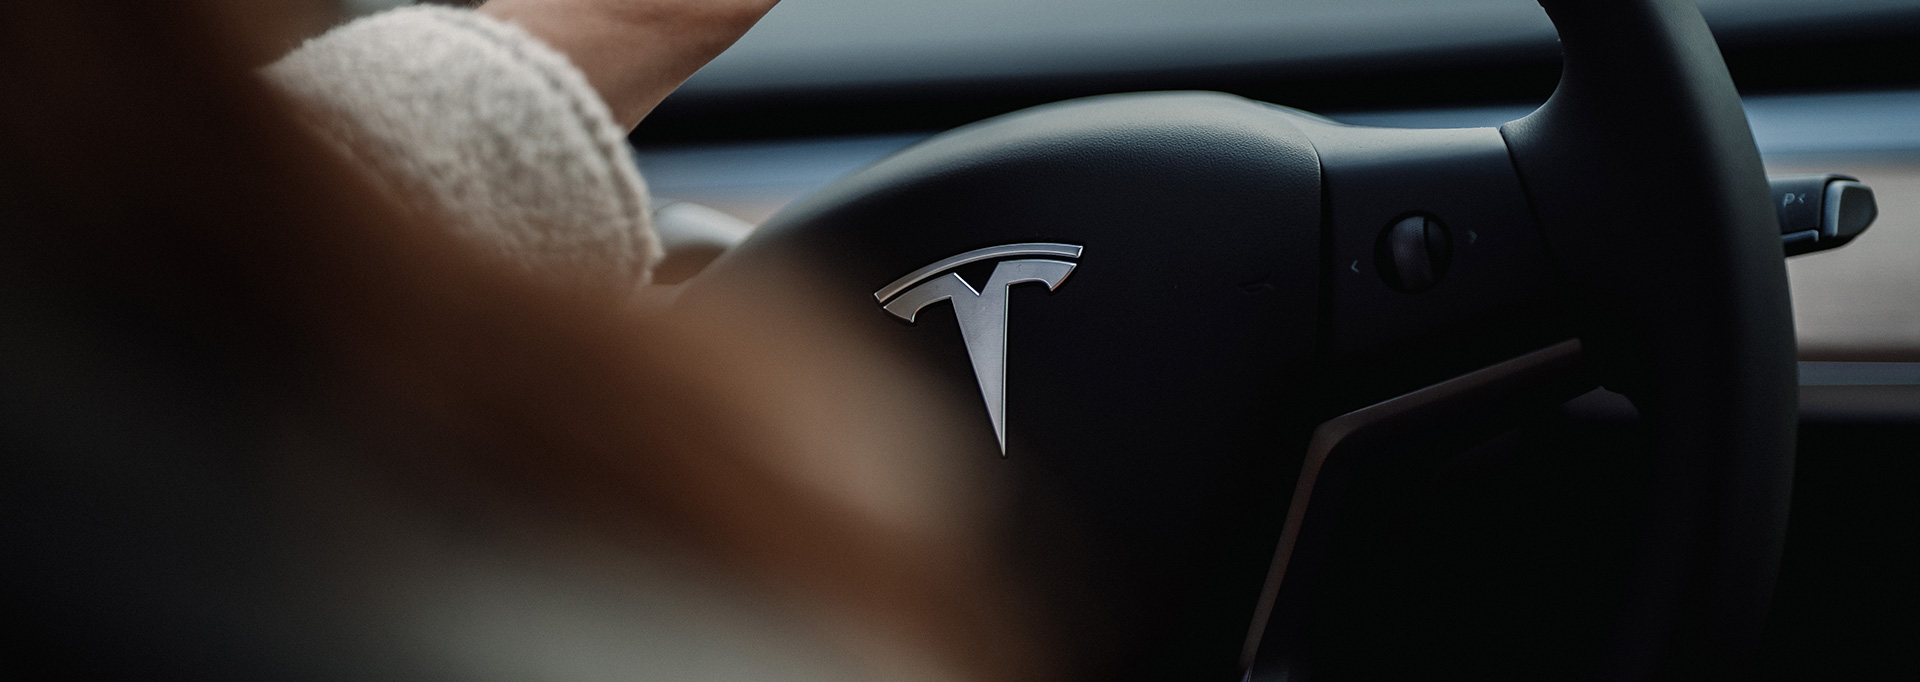 Tesla car steering wheel